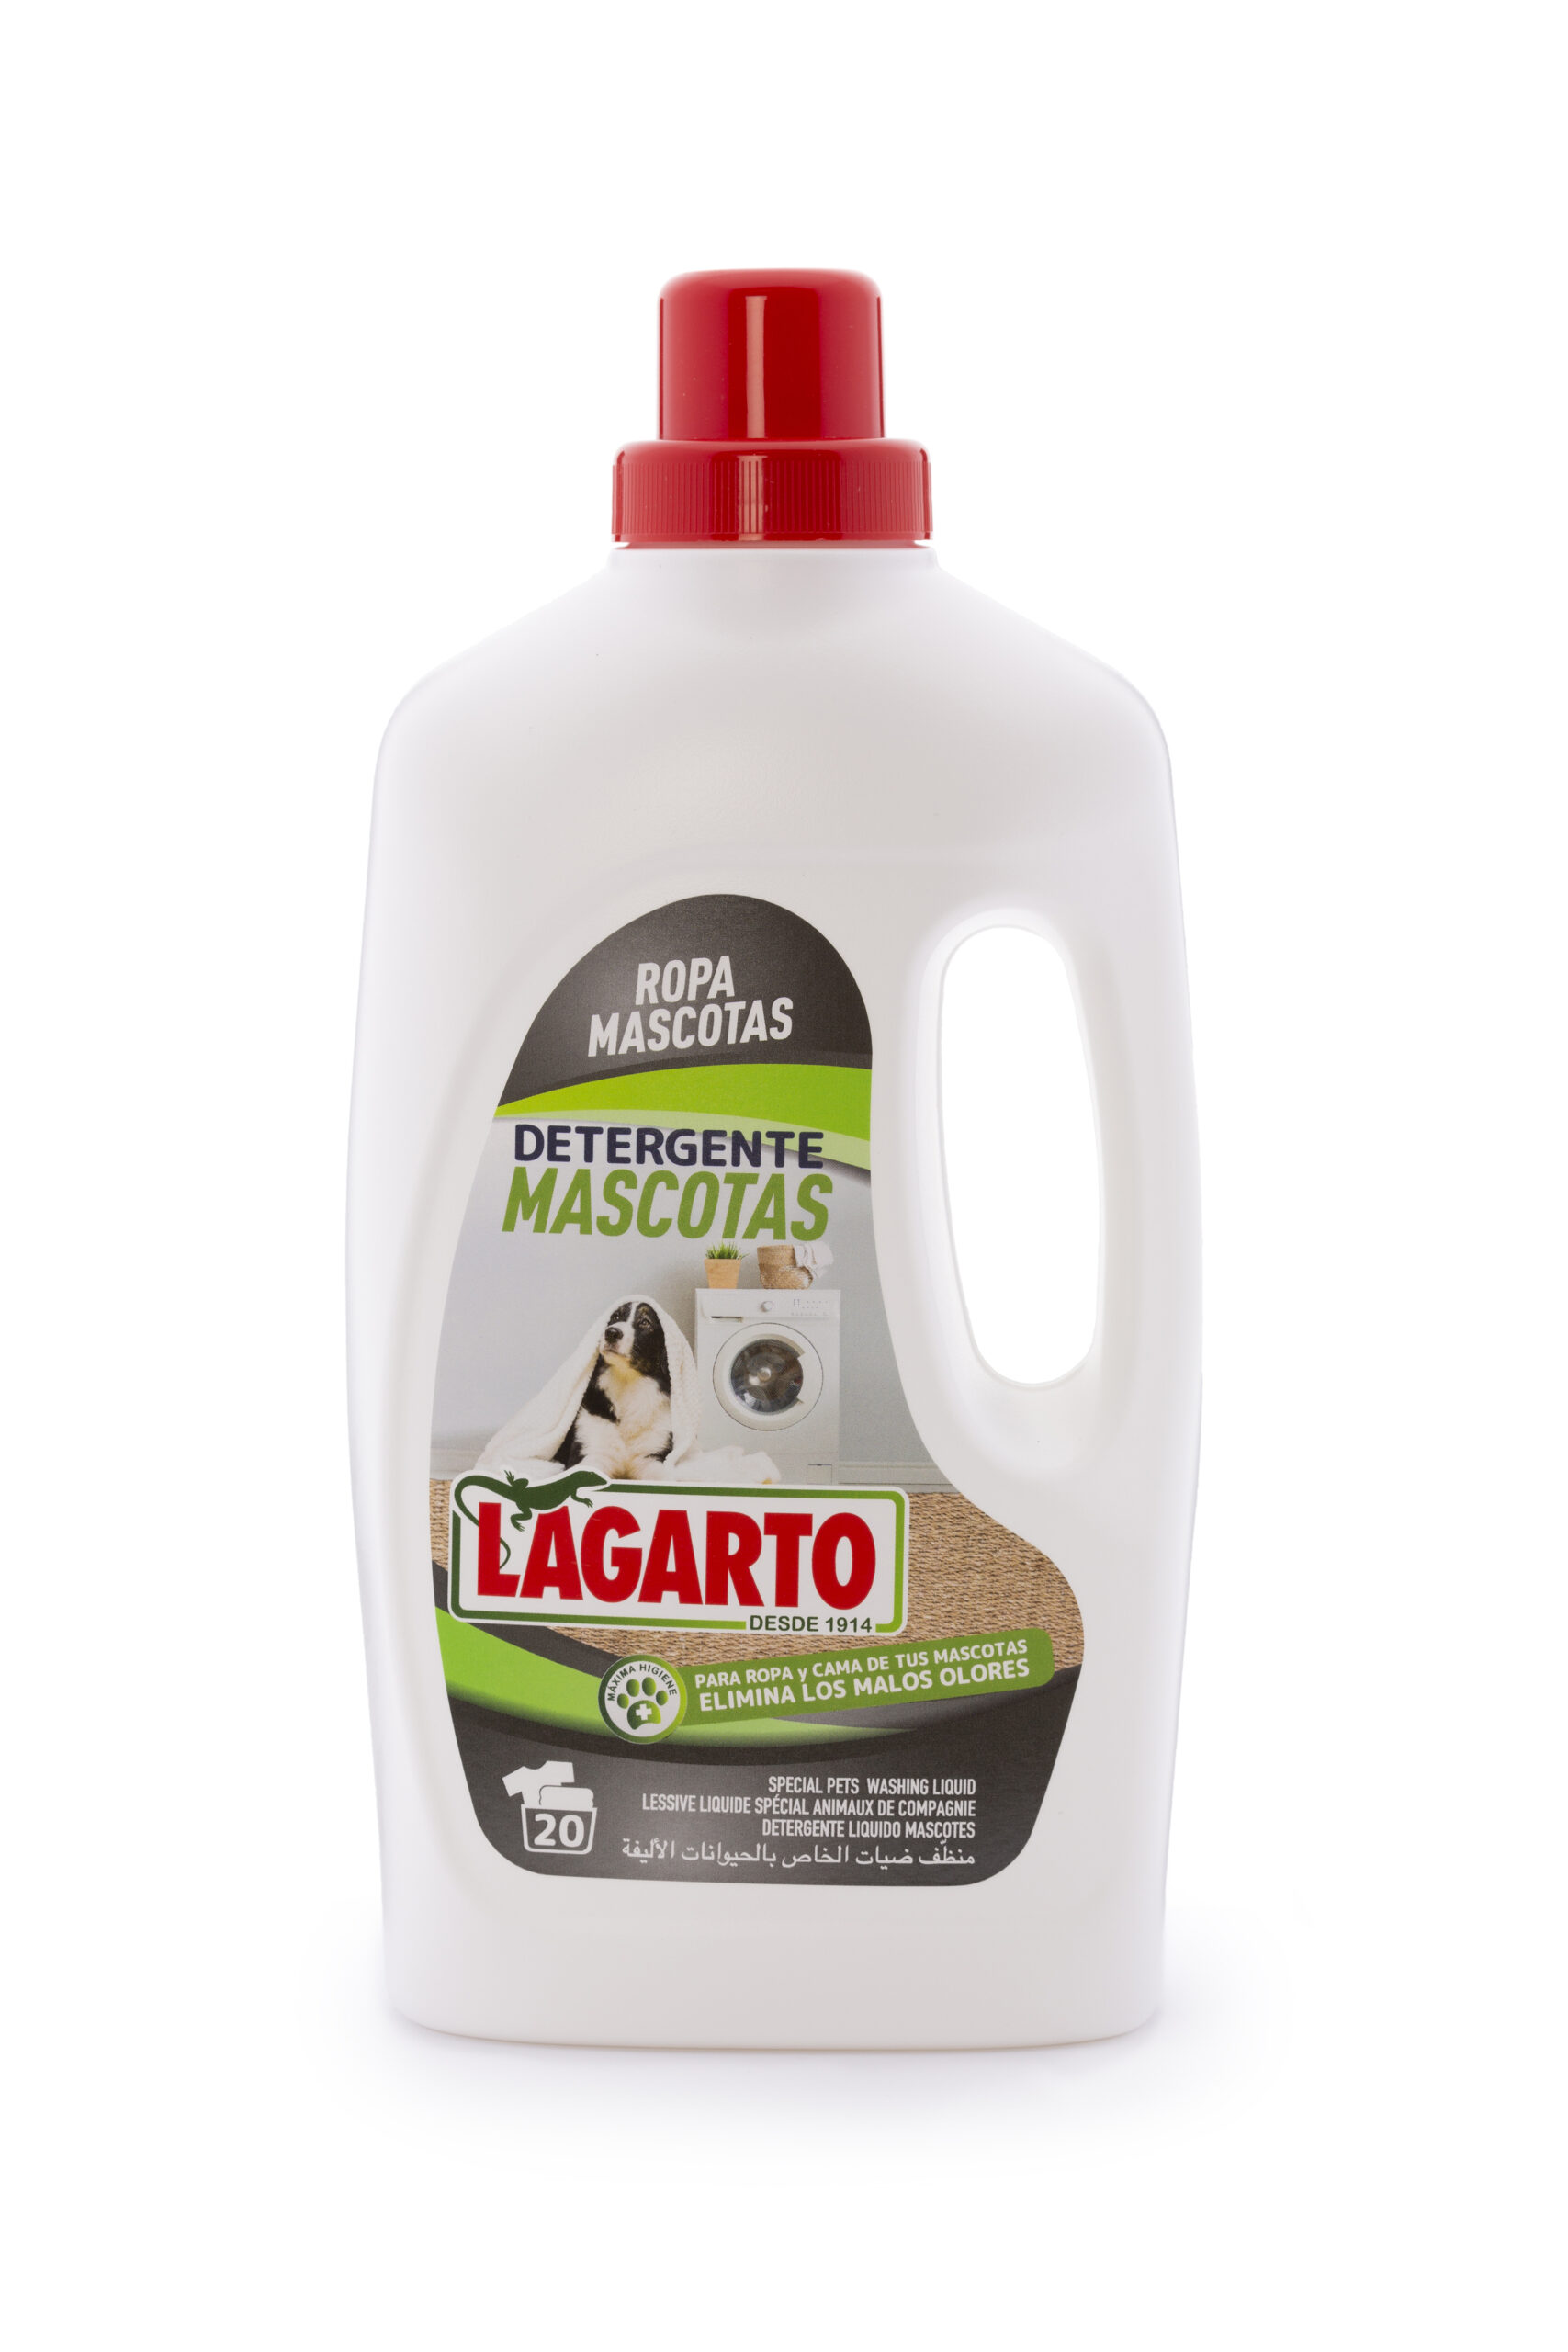 Detergente Lagarto Ropa Mascotas 20 lavados